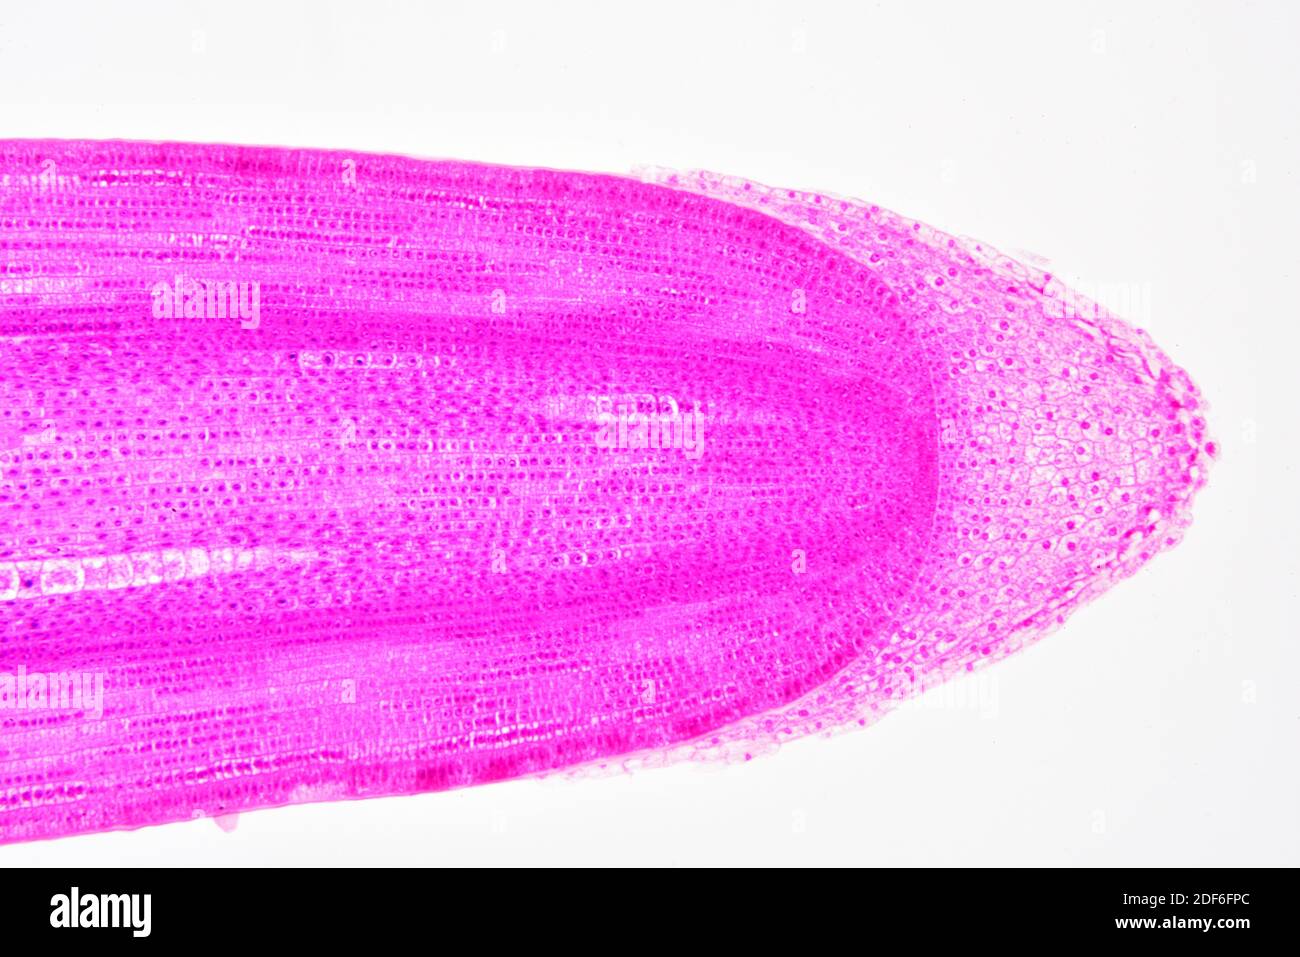 Calyptra oder Wurzelkappe, die Statozyten zeigt, die für die Schwerkraftwahrnehmung in den Pflanzen verantwortlich sind. Optisches Mikroskop X100. Stockfoto